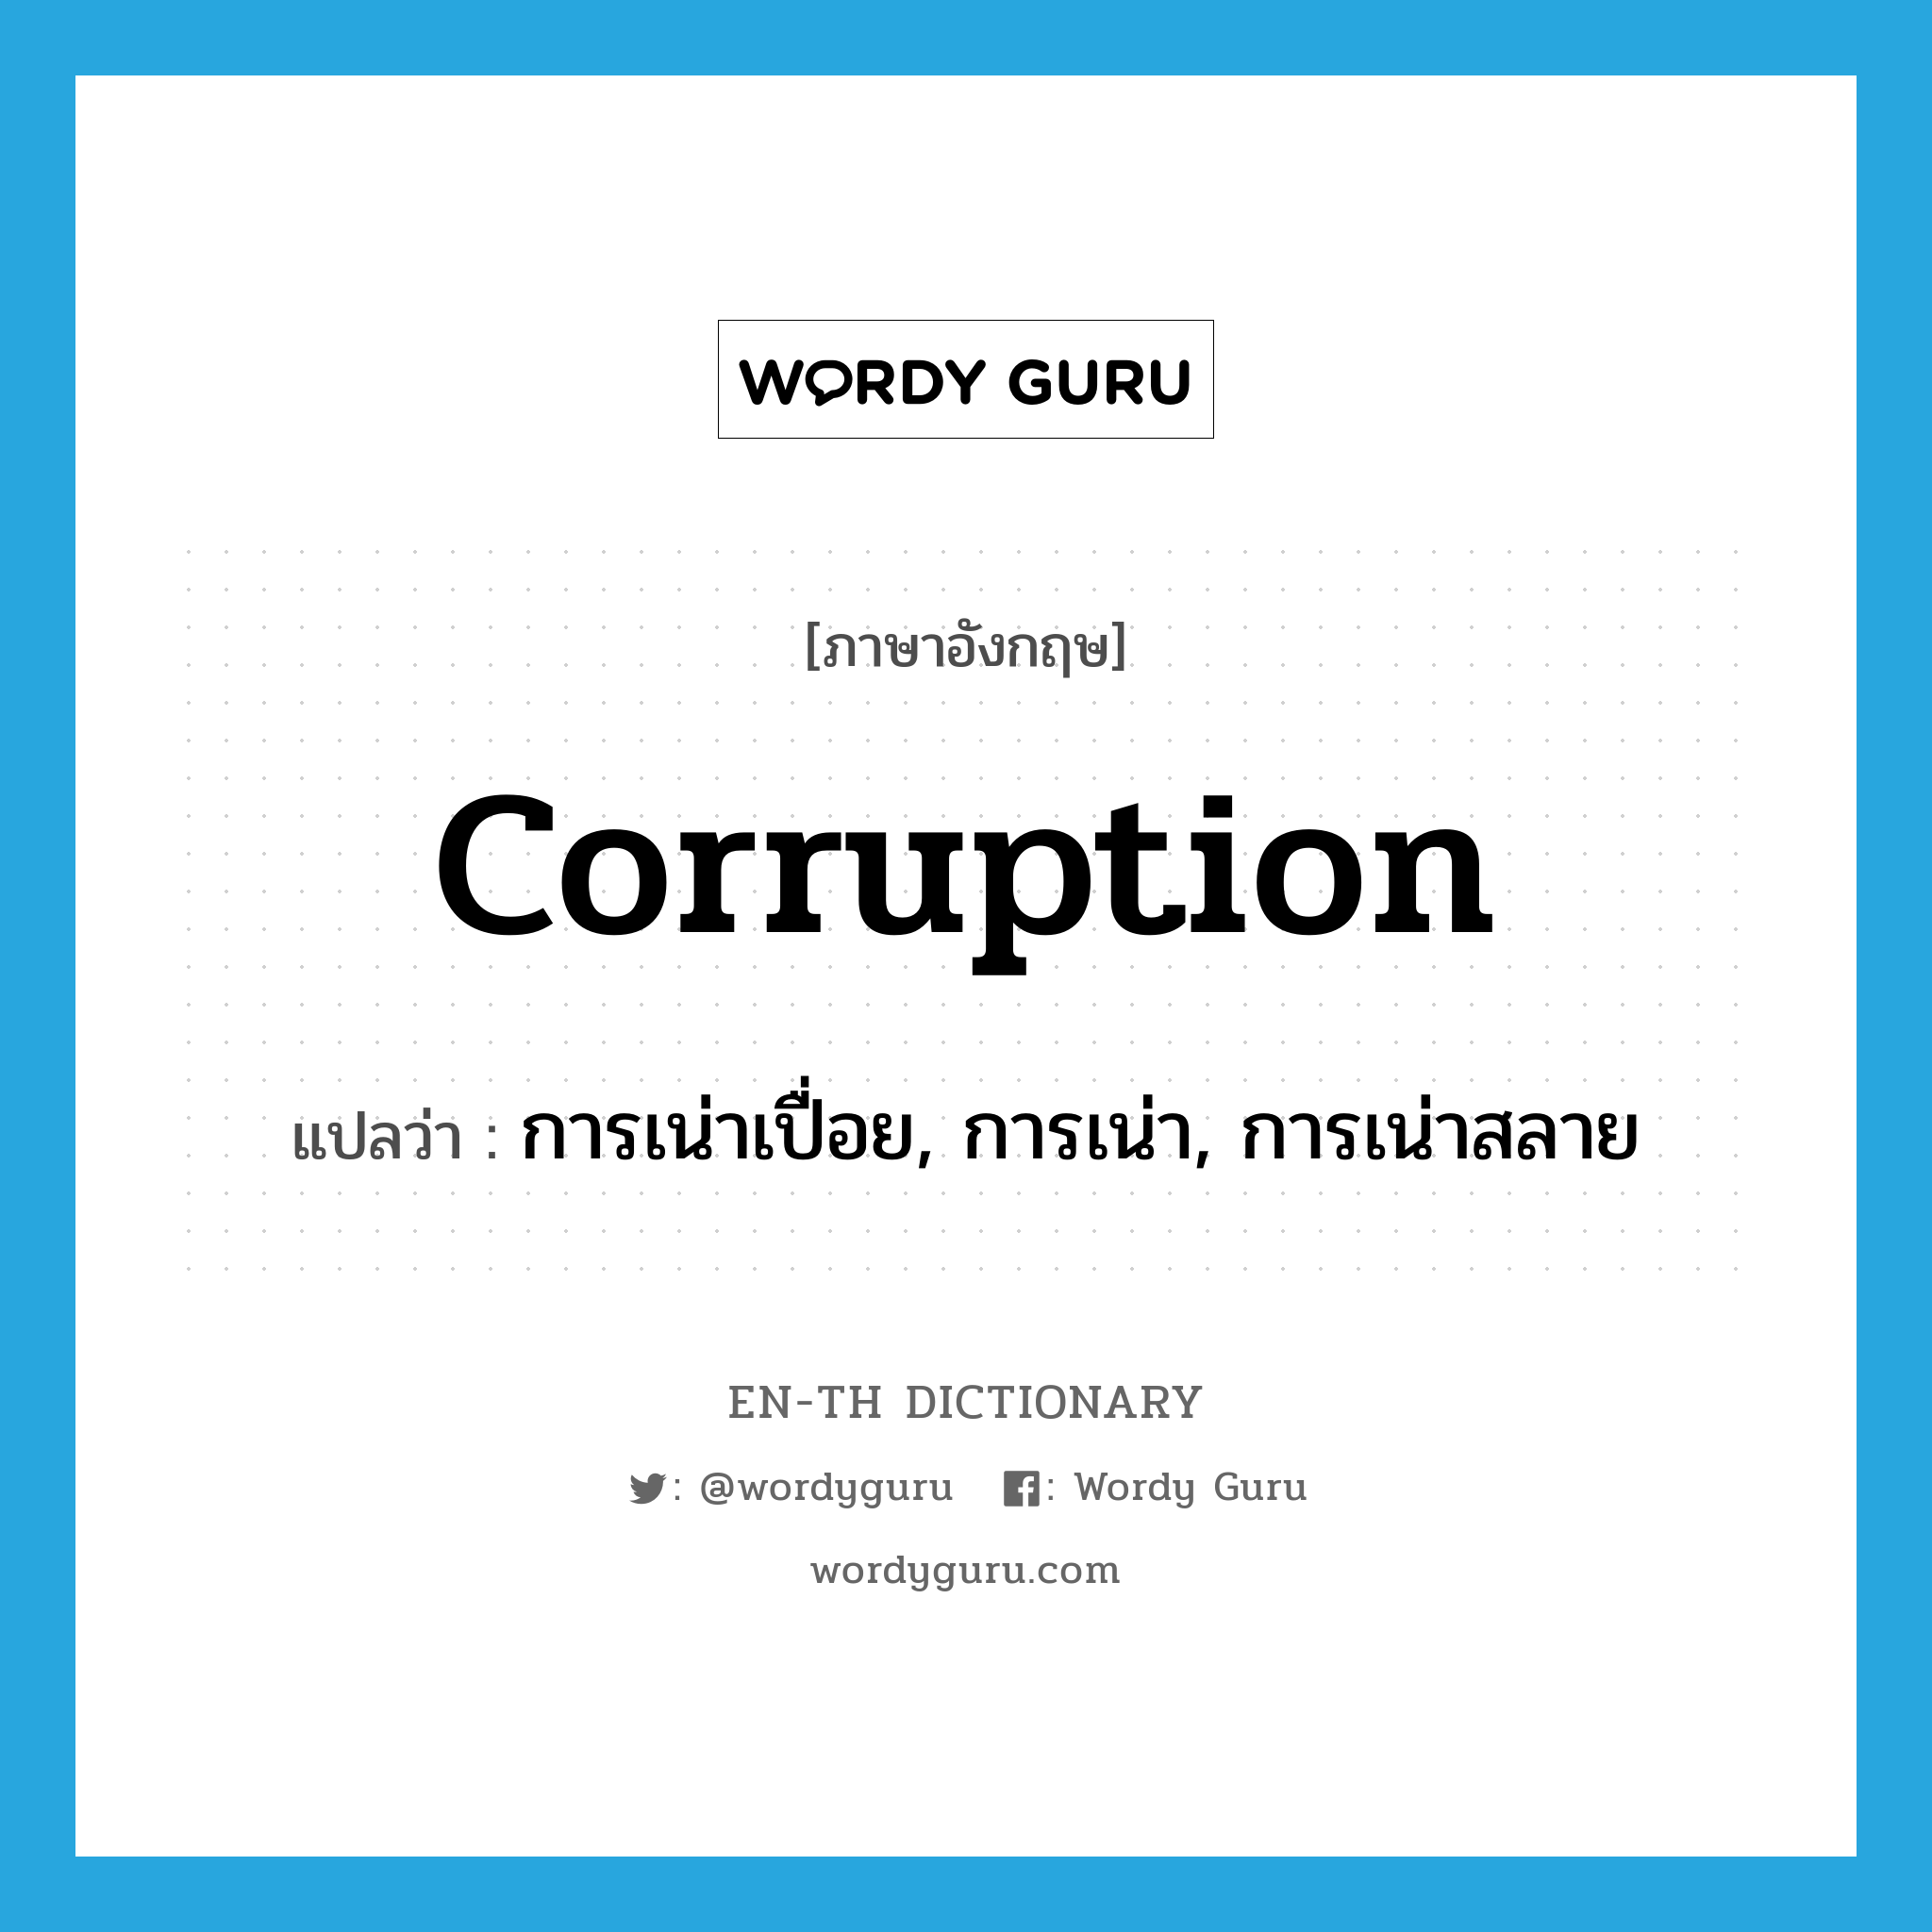 การเน่าเปื่อย, การเน่า, การเน่าสลาย ภาษาอังกฤษ?, คำศัพท์ภาษาอังกฤษ การเน่าเปื่อย, การเน่า, การเน่าสลาย แปลว่า corruption ประเภท N หมวด N